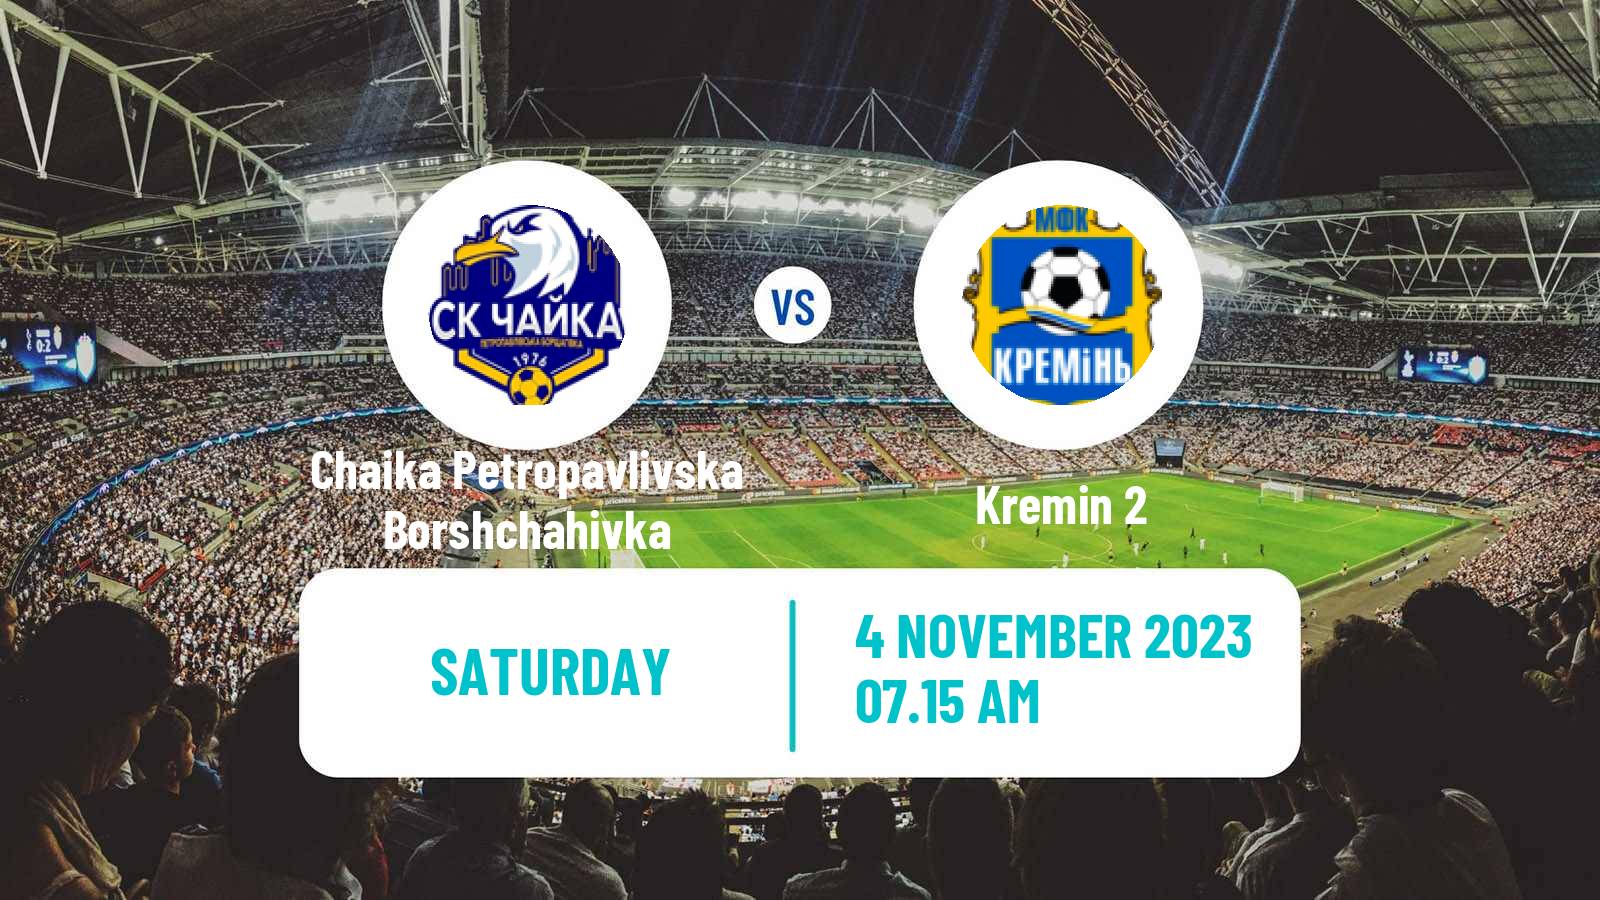 Soccer Ukrainian Druha Liga Chaika Petropavlivska Borshchahivka - Kremin 2